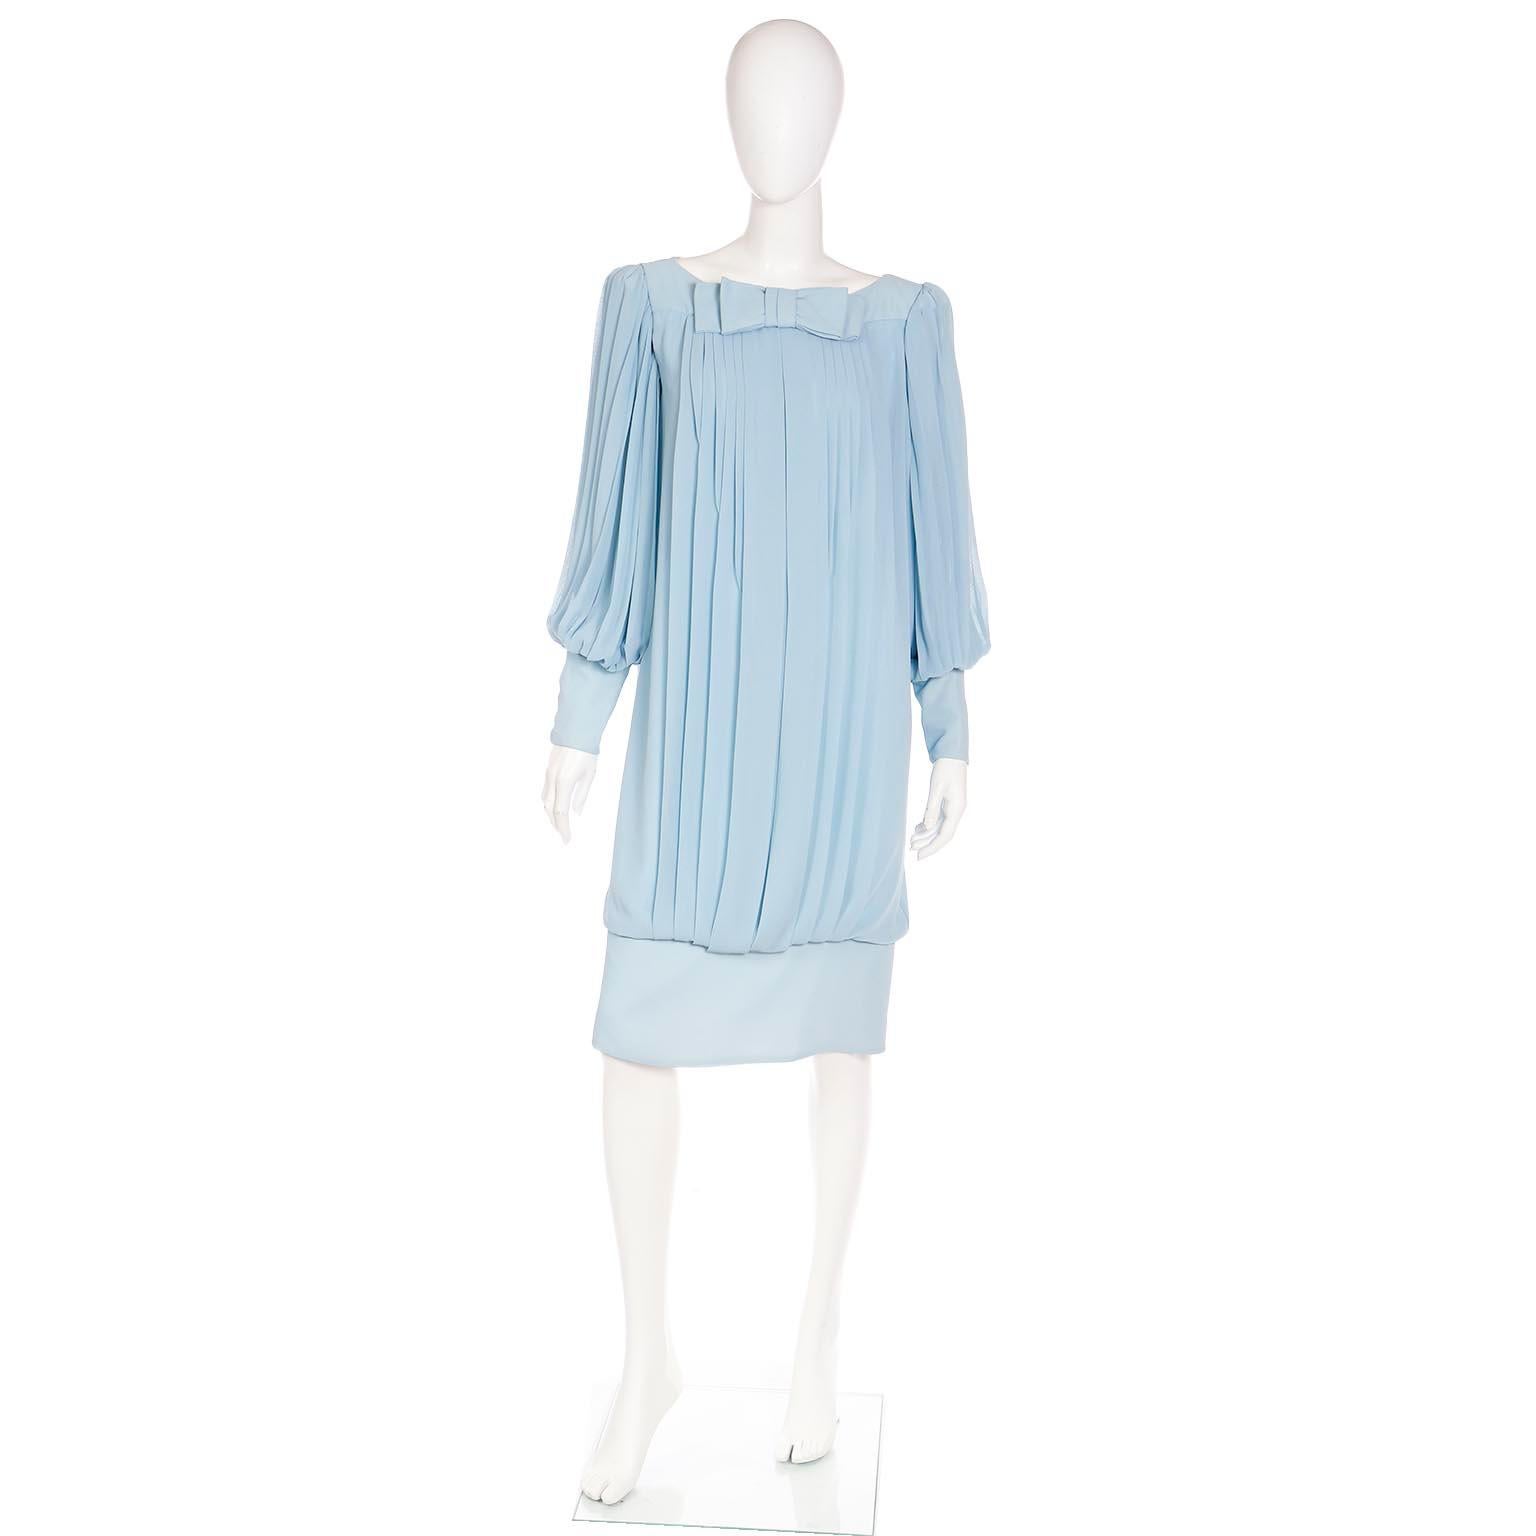 Nous adorons les robes vintage uniques des années 1960 et celle-ci est une fabuleuse robe de soirée ou de jour en mousseline de soie bleue avec un ourlet en bande dans un style plissé librement drapé. La robe comporte un nœud au centre de l'encolure